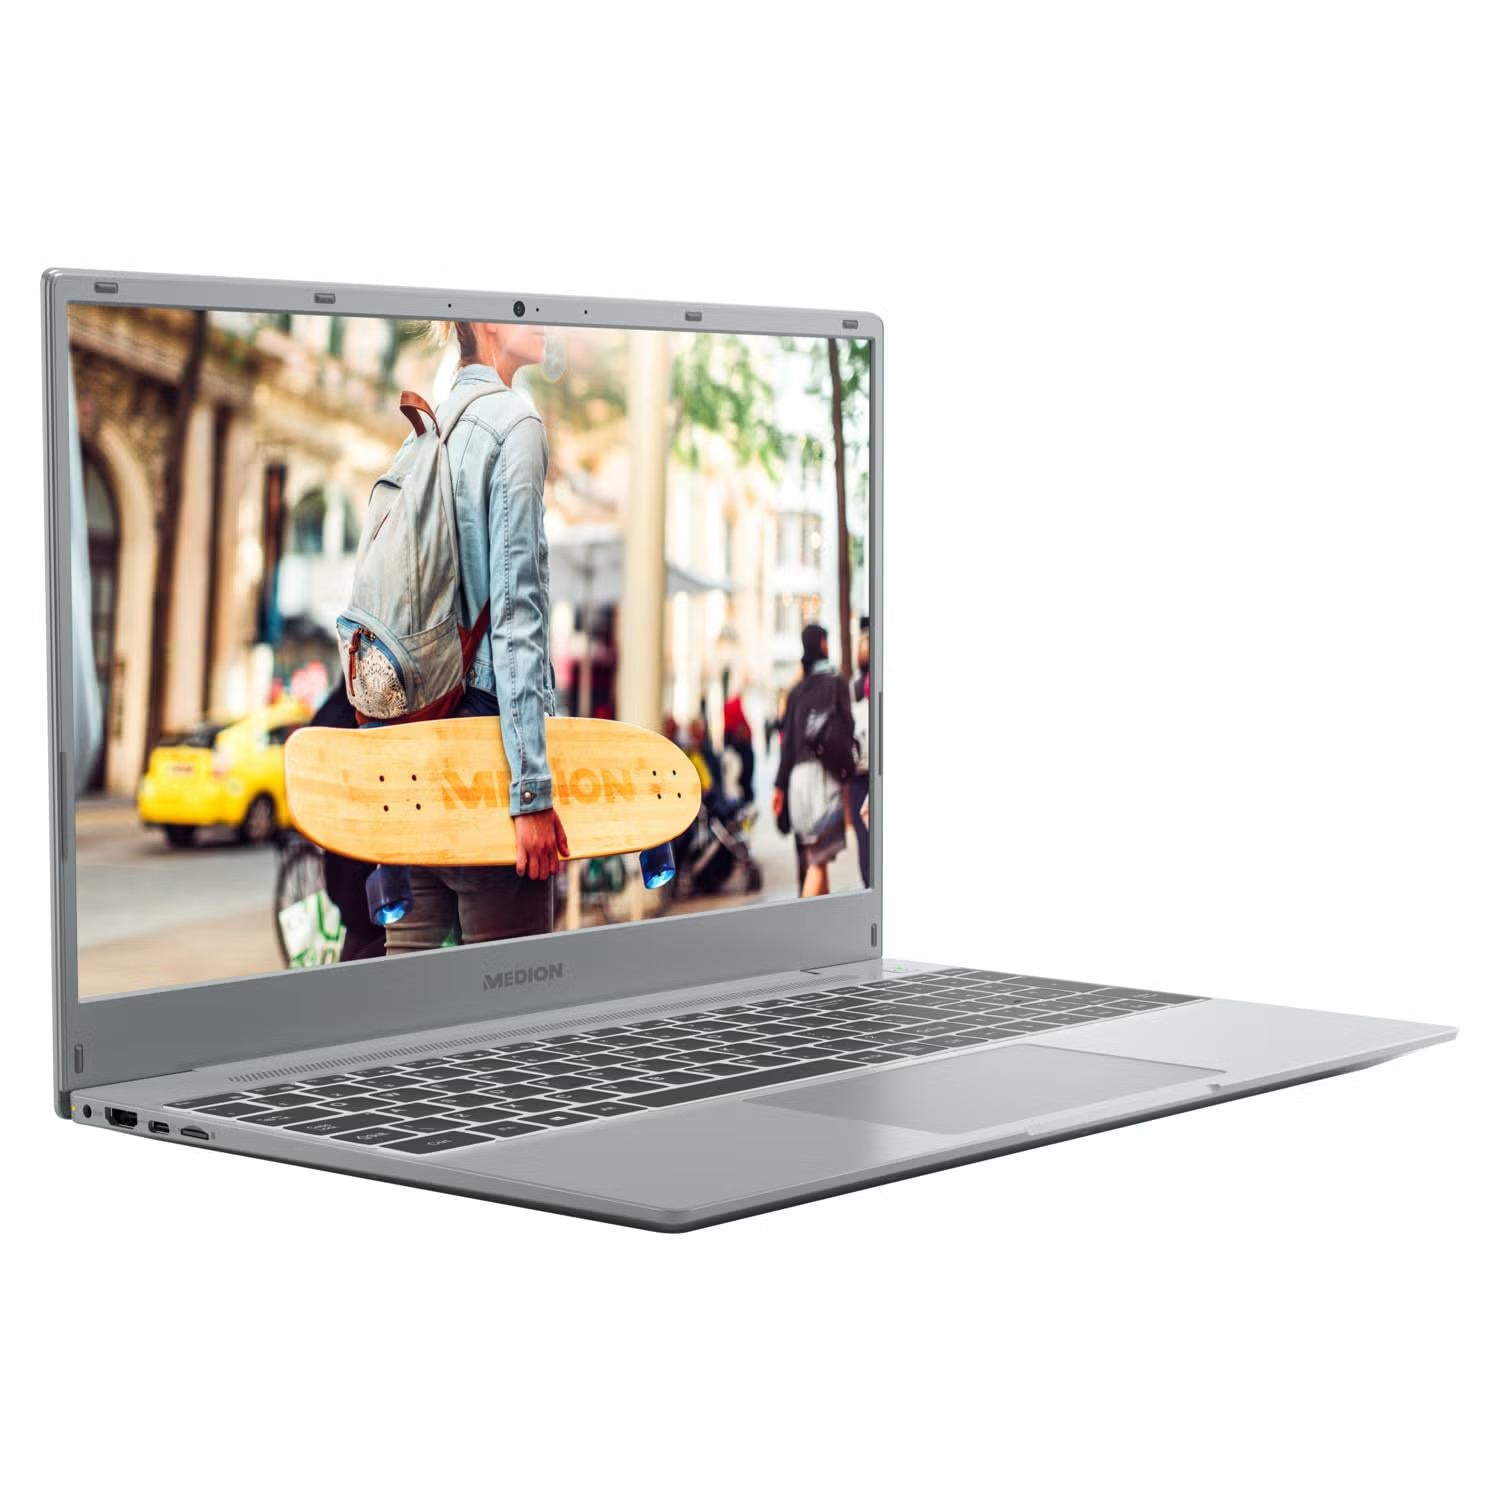 Medion Akoya E15407 15.6" i5-1035G1 512GB 8GB FHD Windows 11 Silver Laptop B